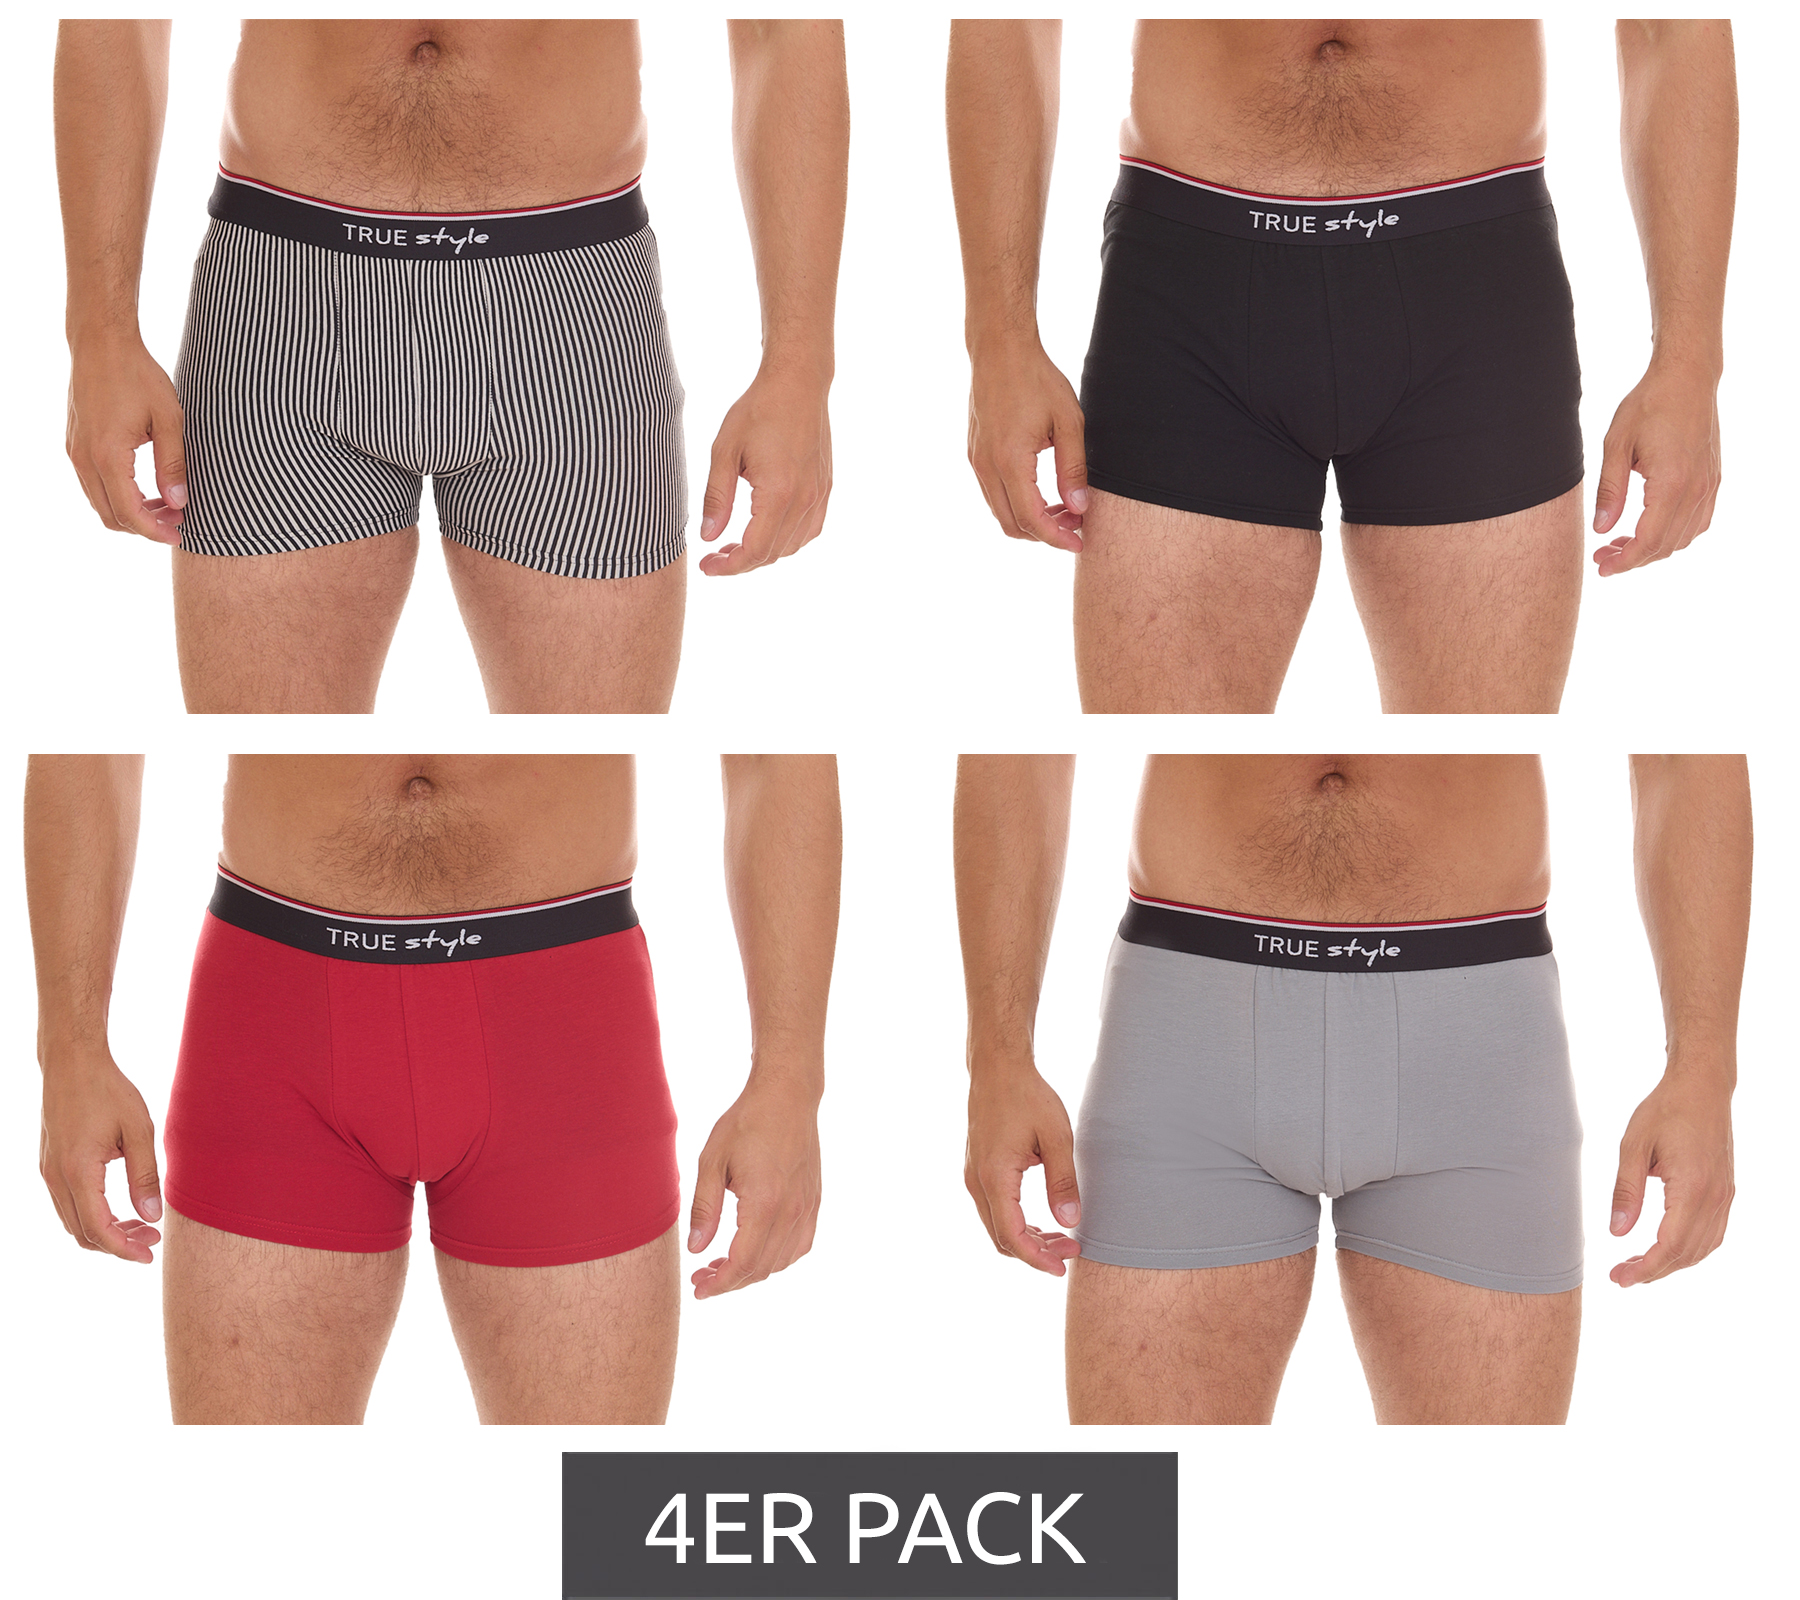 4er Pack TRUE style Herren Baumwoll-Boxershorts Retro-Shorts 8893024 Schwarz/Grau/Rot/Weiß gestreift von TRUE style